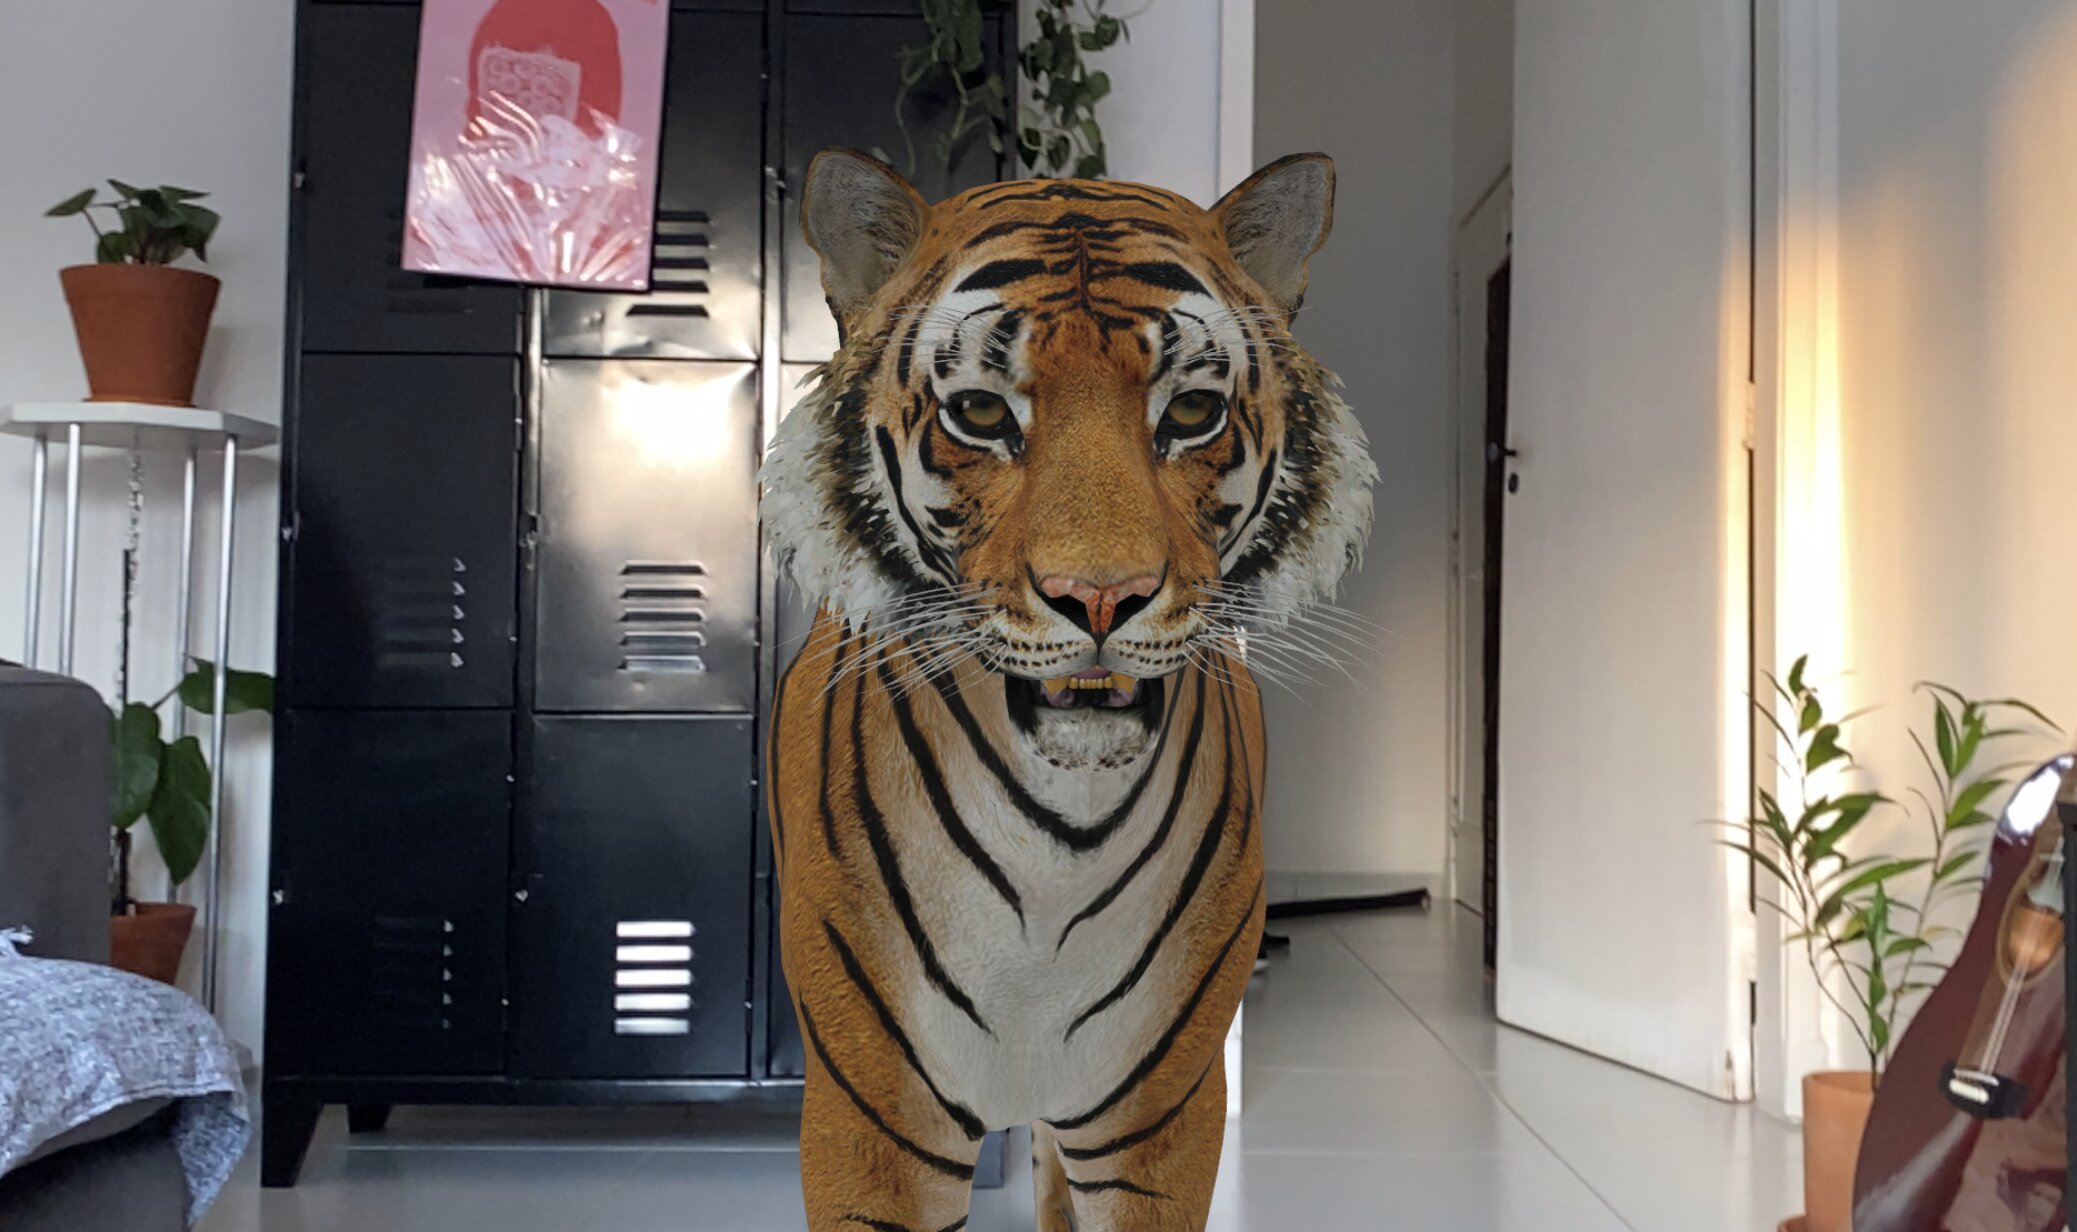 ANIMAIS 3D do GOOGLE VEJA NO SEU ESPAÇO QUALQUER ANIMAL ( panda leão  tubarão zebra tigre e mais ) 